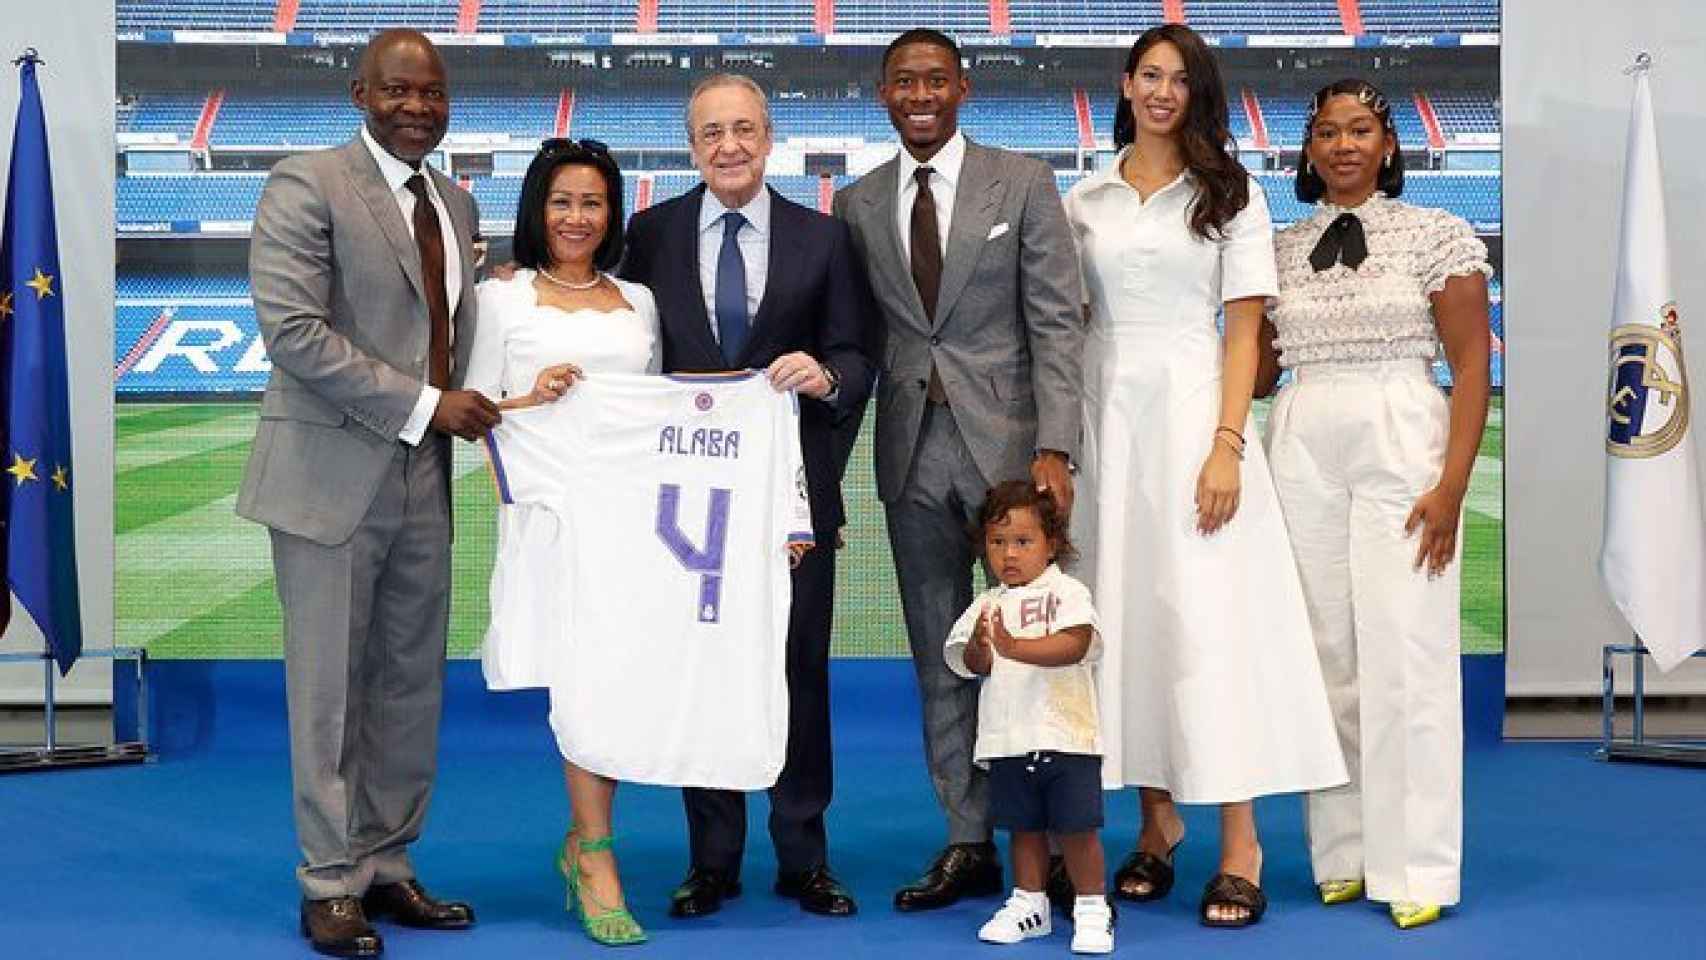 Uno de los fichajes que han llegado a coste cero, David Alaba, posa junto a su familia y Florentino Pérez / Real Madrid